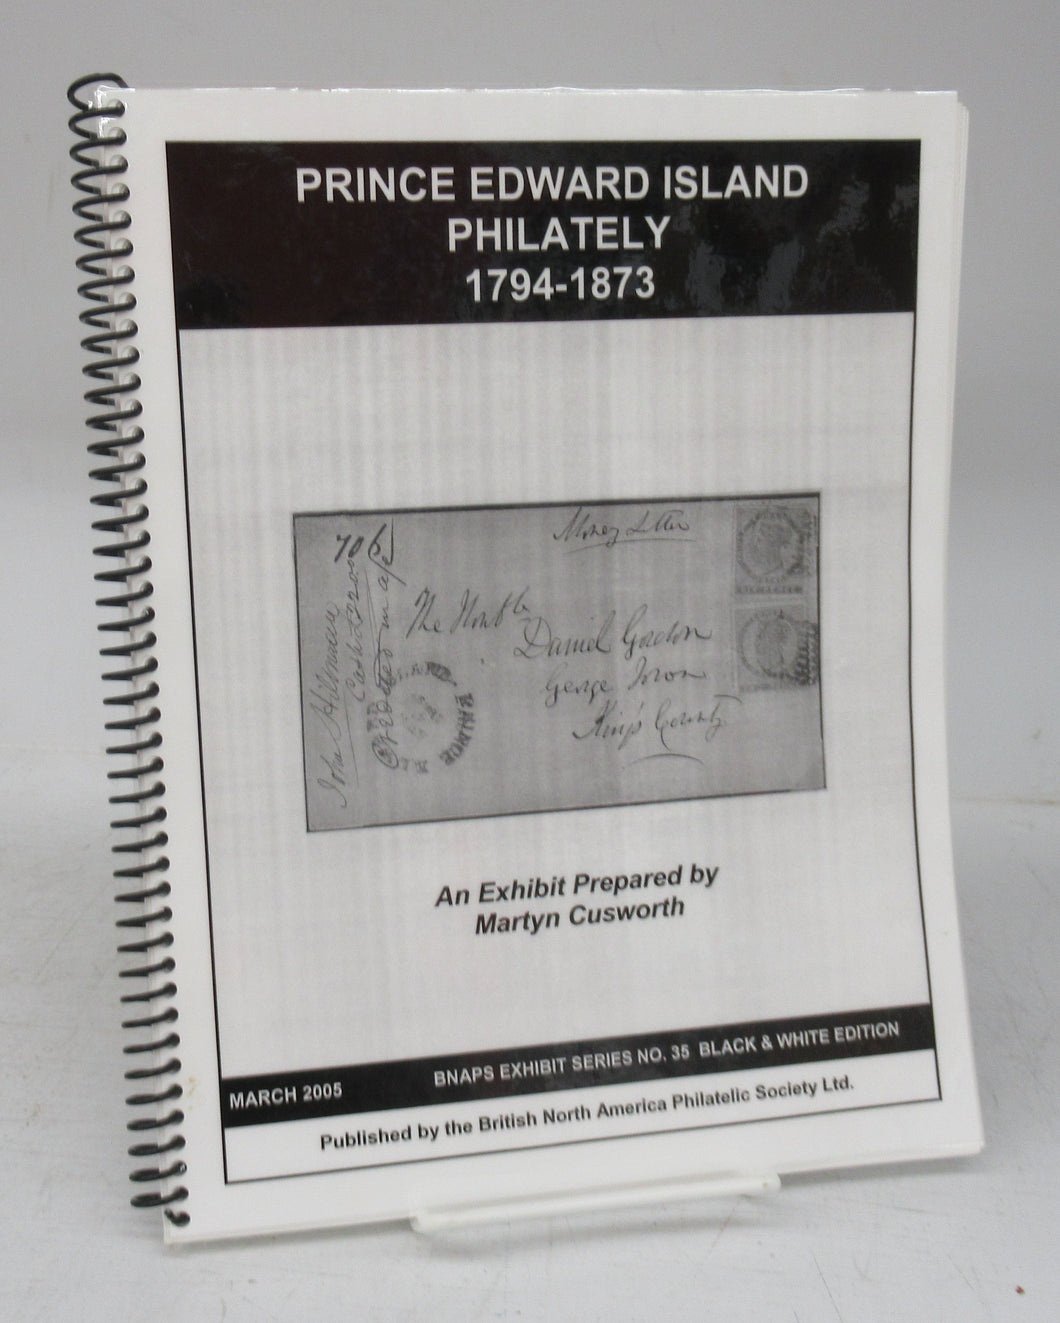 Prince Edward Island Philately 1794-1873: An Exhibit Prepared by Martyn Cusworth